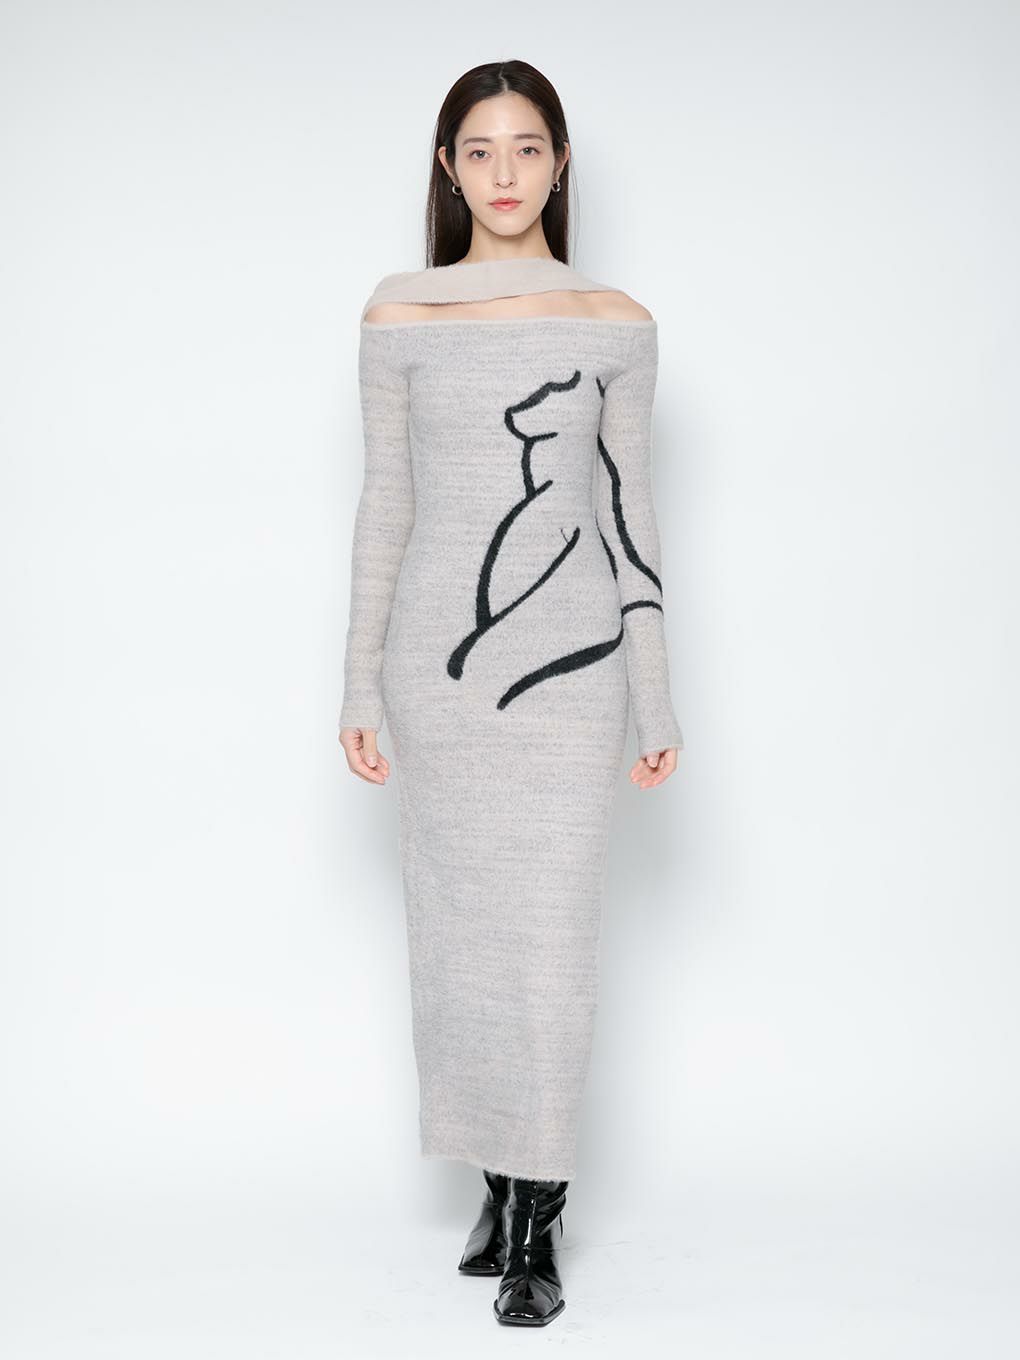 【Melt the lady】nuance body long dress